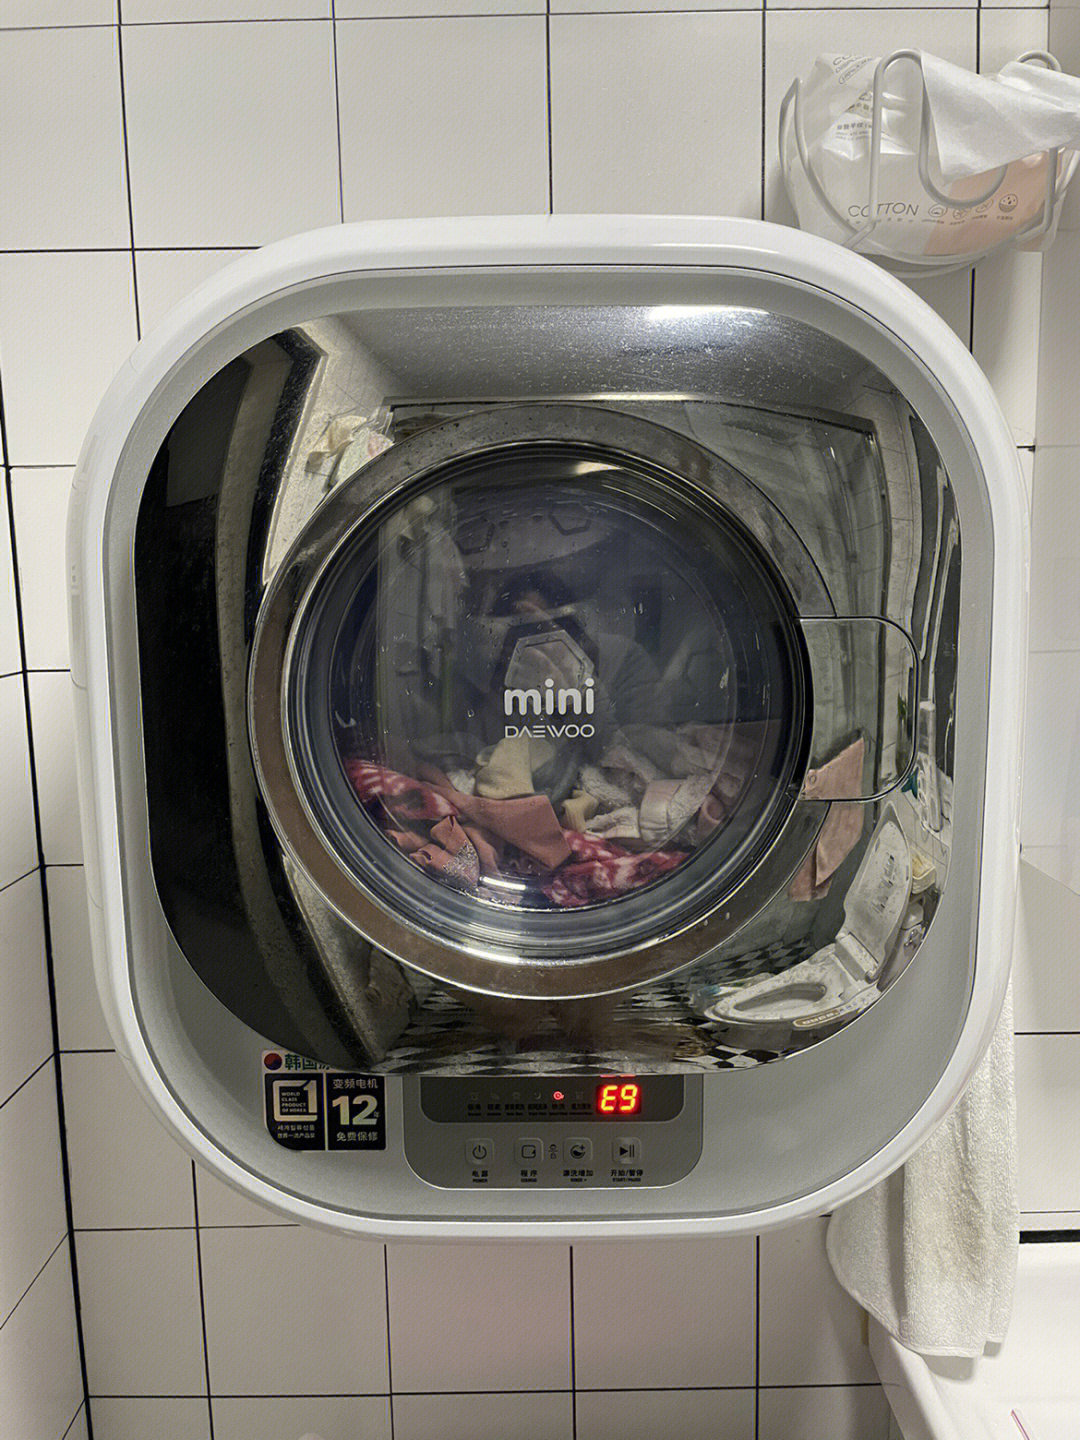 大宇mini洗衣机故障oe图片